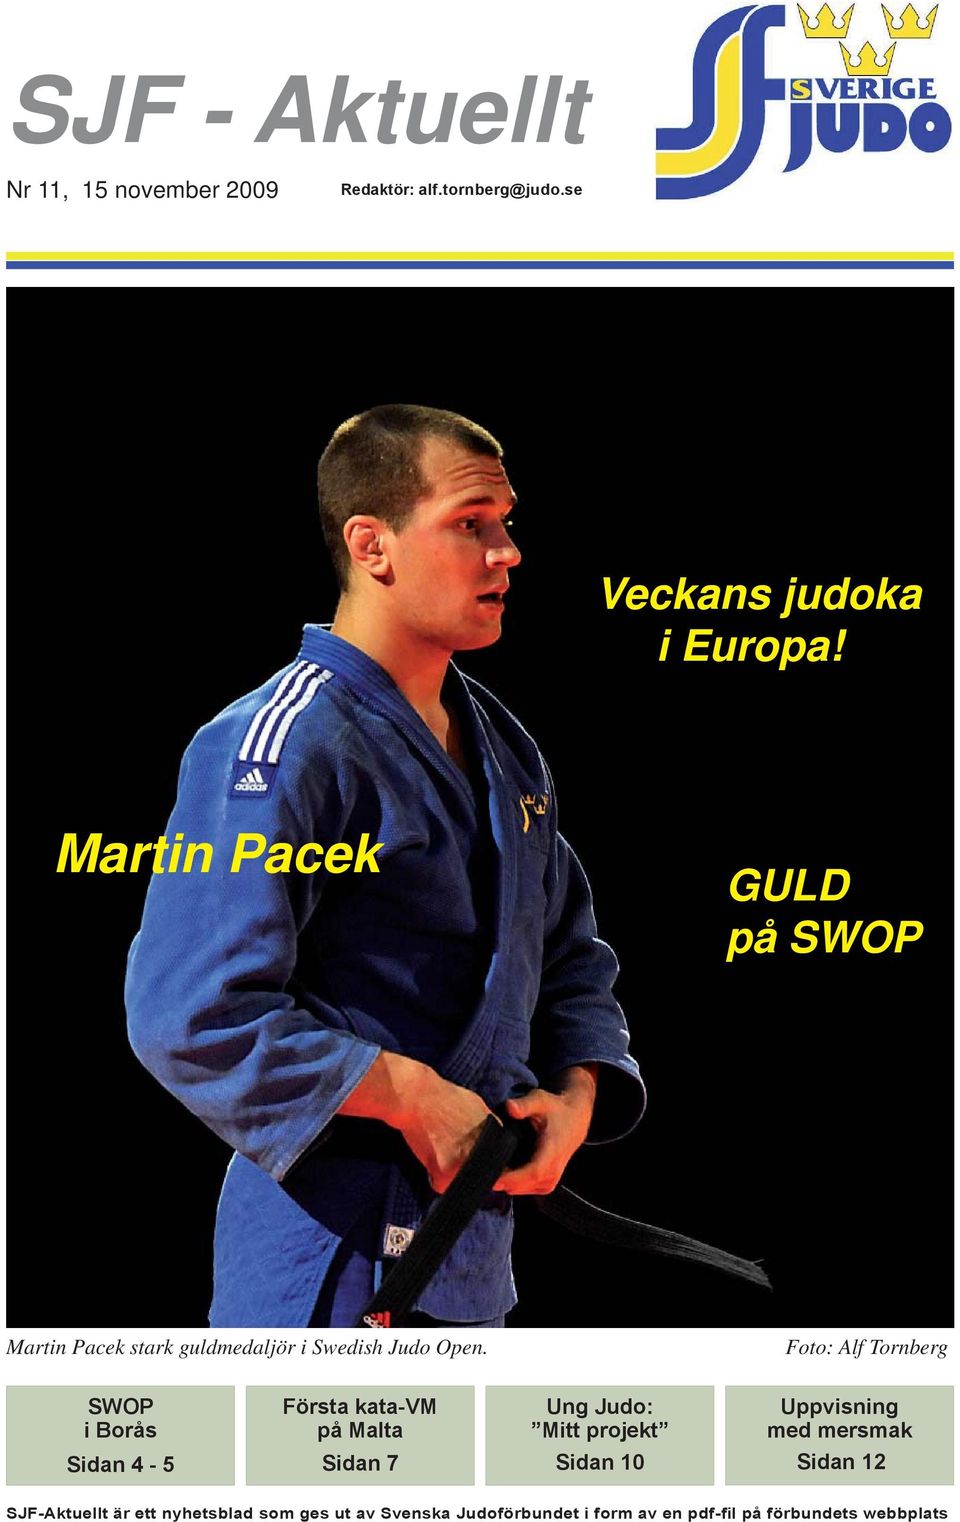 Foto: Alf Tornberg SWOP i Borås Första kata-vm på Malta Sidan 4-5 Sidan 7 Ung Judo: Mitt projekt Sidan 10